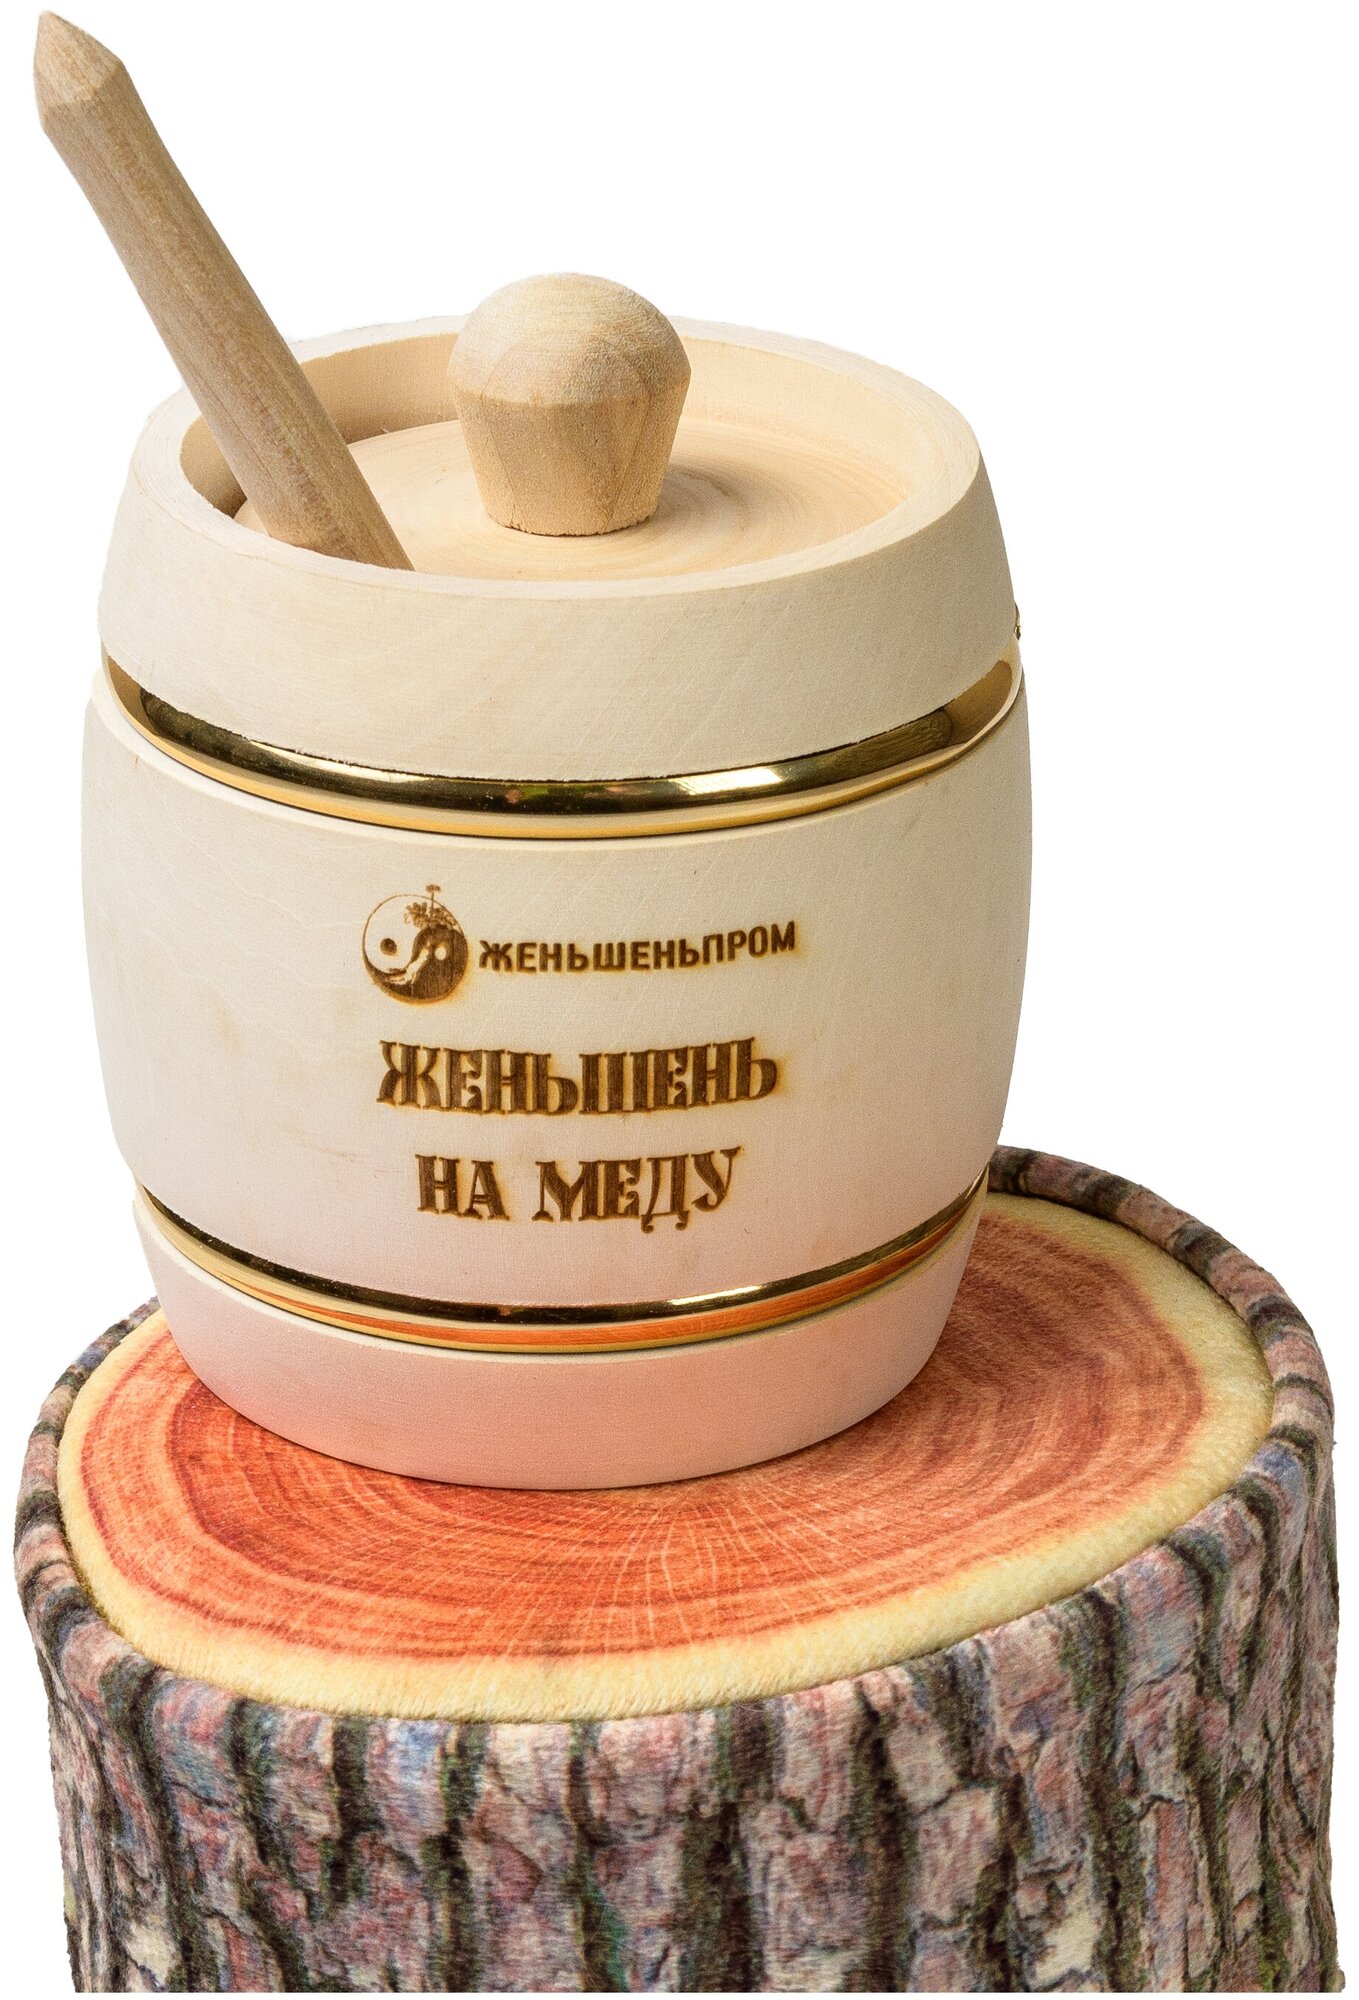 Женьшень на меду, 250 г, в подарочном деревянном бочоночке - фотография № 20